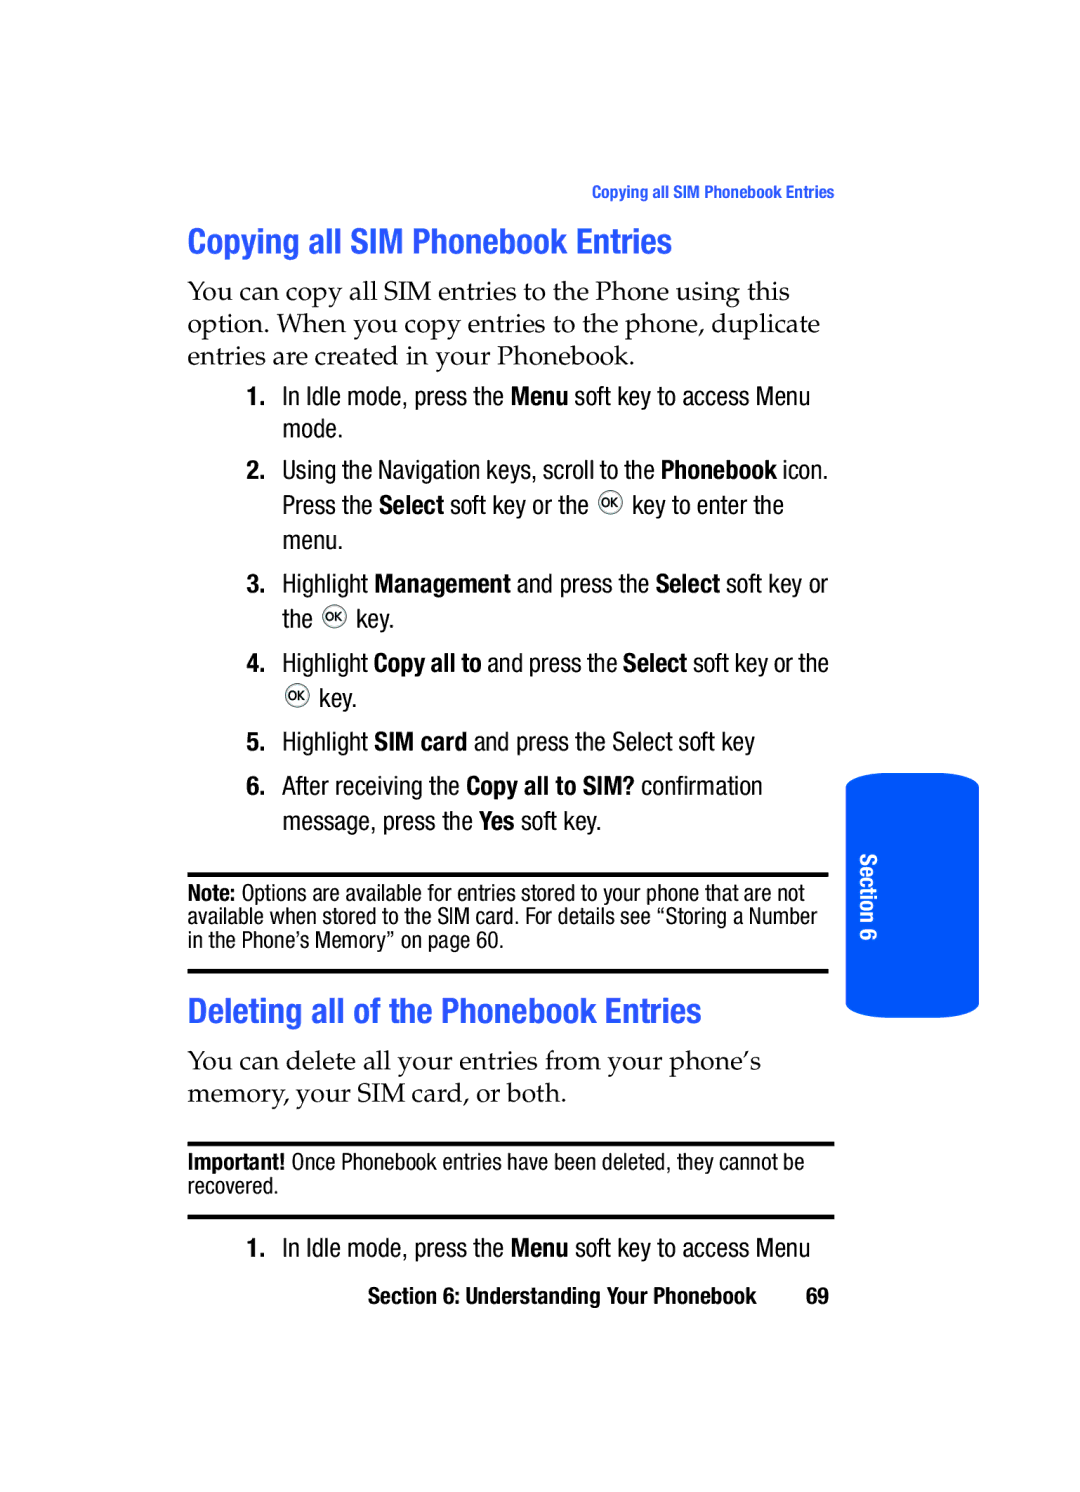 Samsung SGH-T519 manual Copying all SIM Phonebook Entries, Deleting all of the Phonebook Entries 